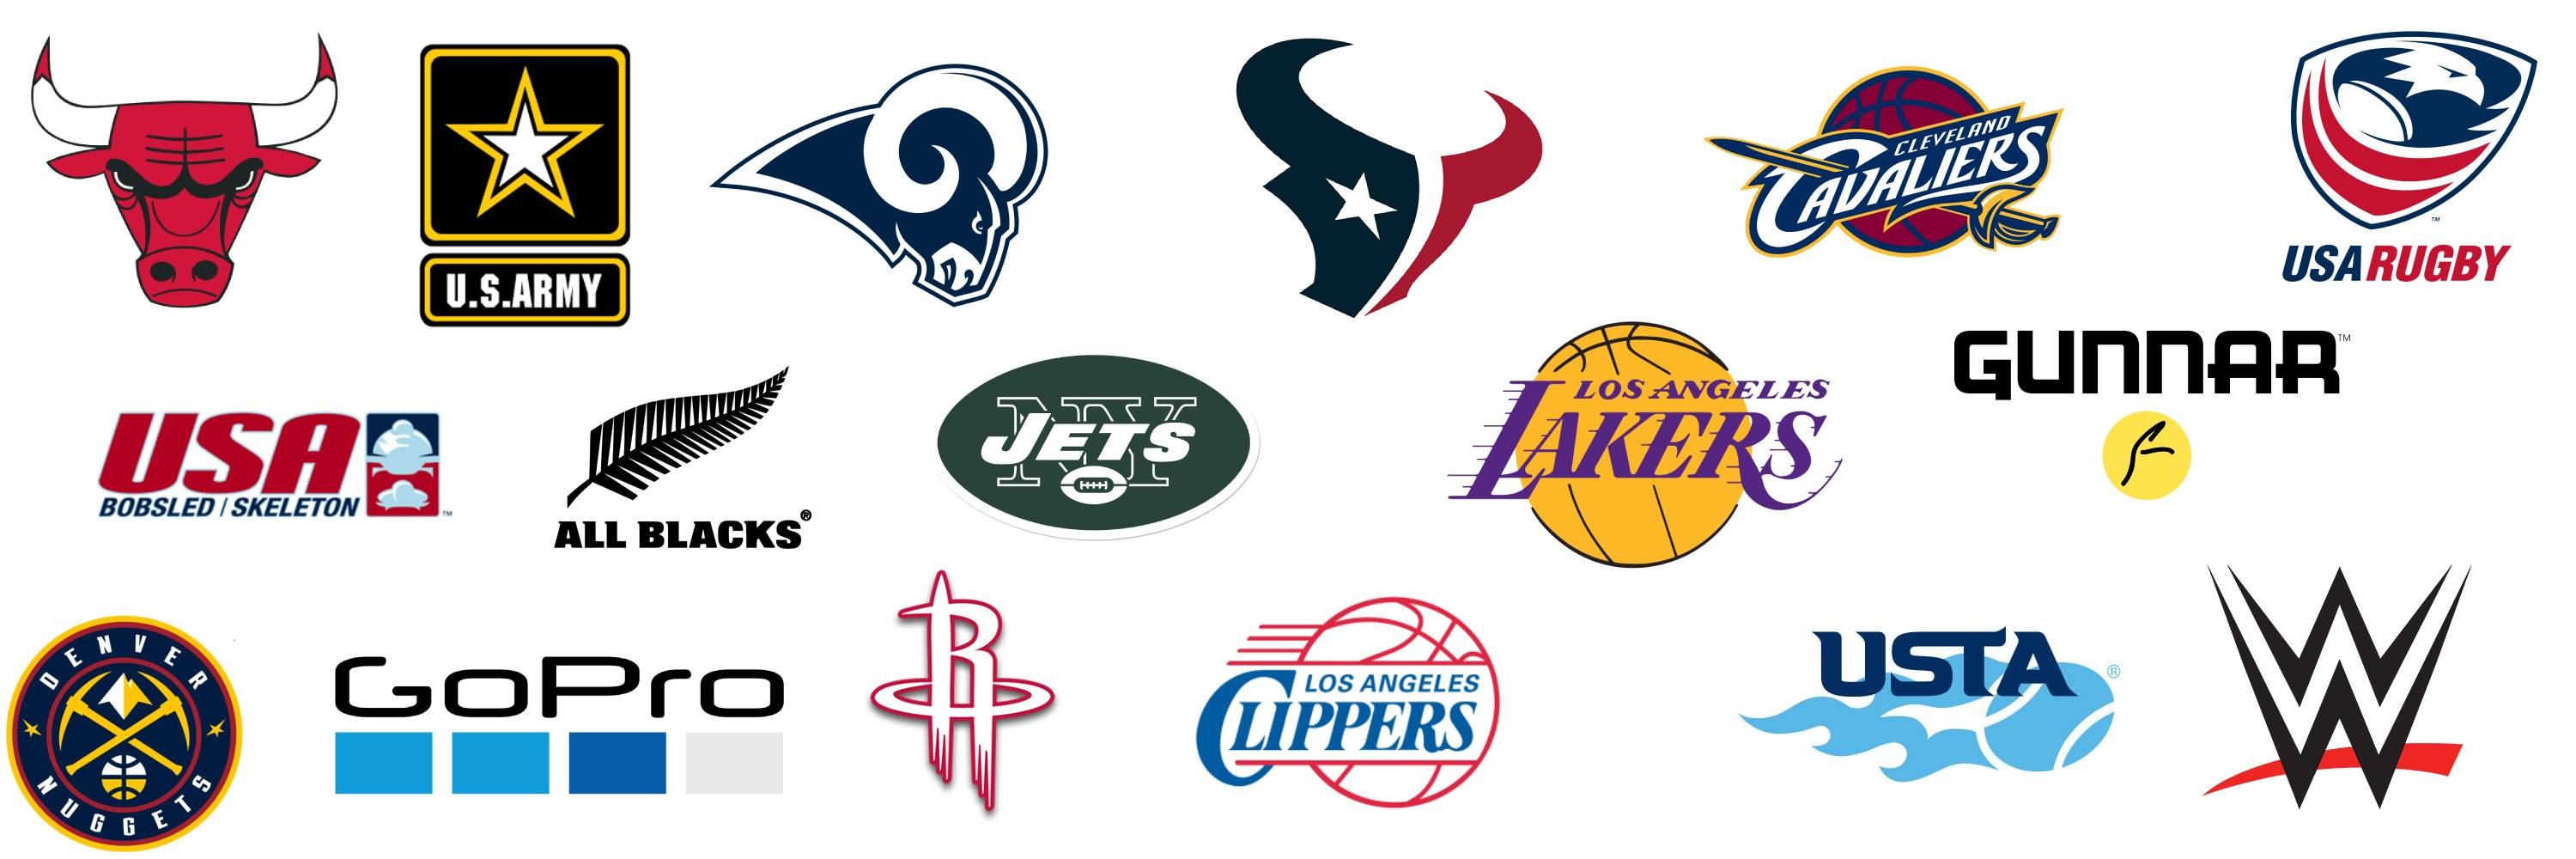 logos of teams using the morph rollrt